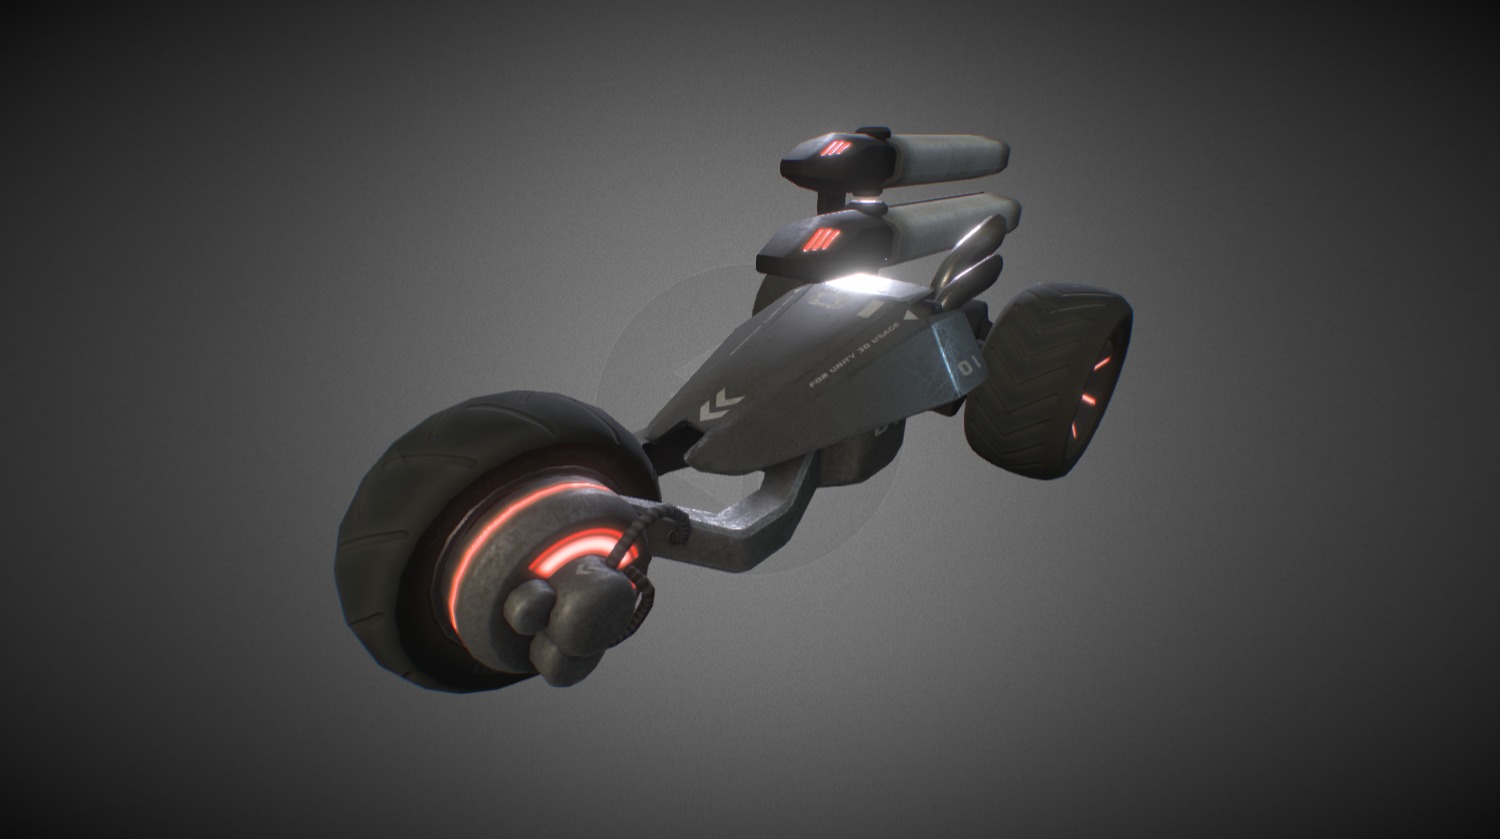 Buggy Drone - 3D model by MekaRamen 3d model